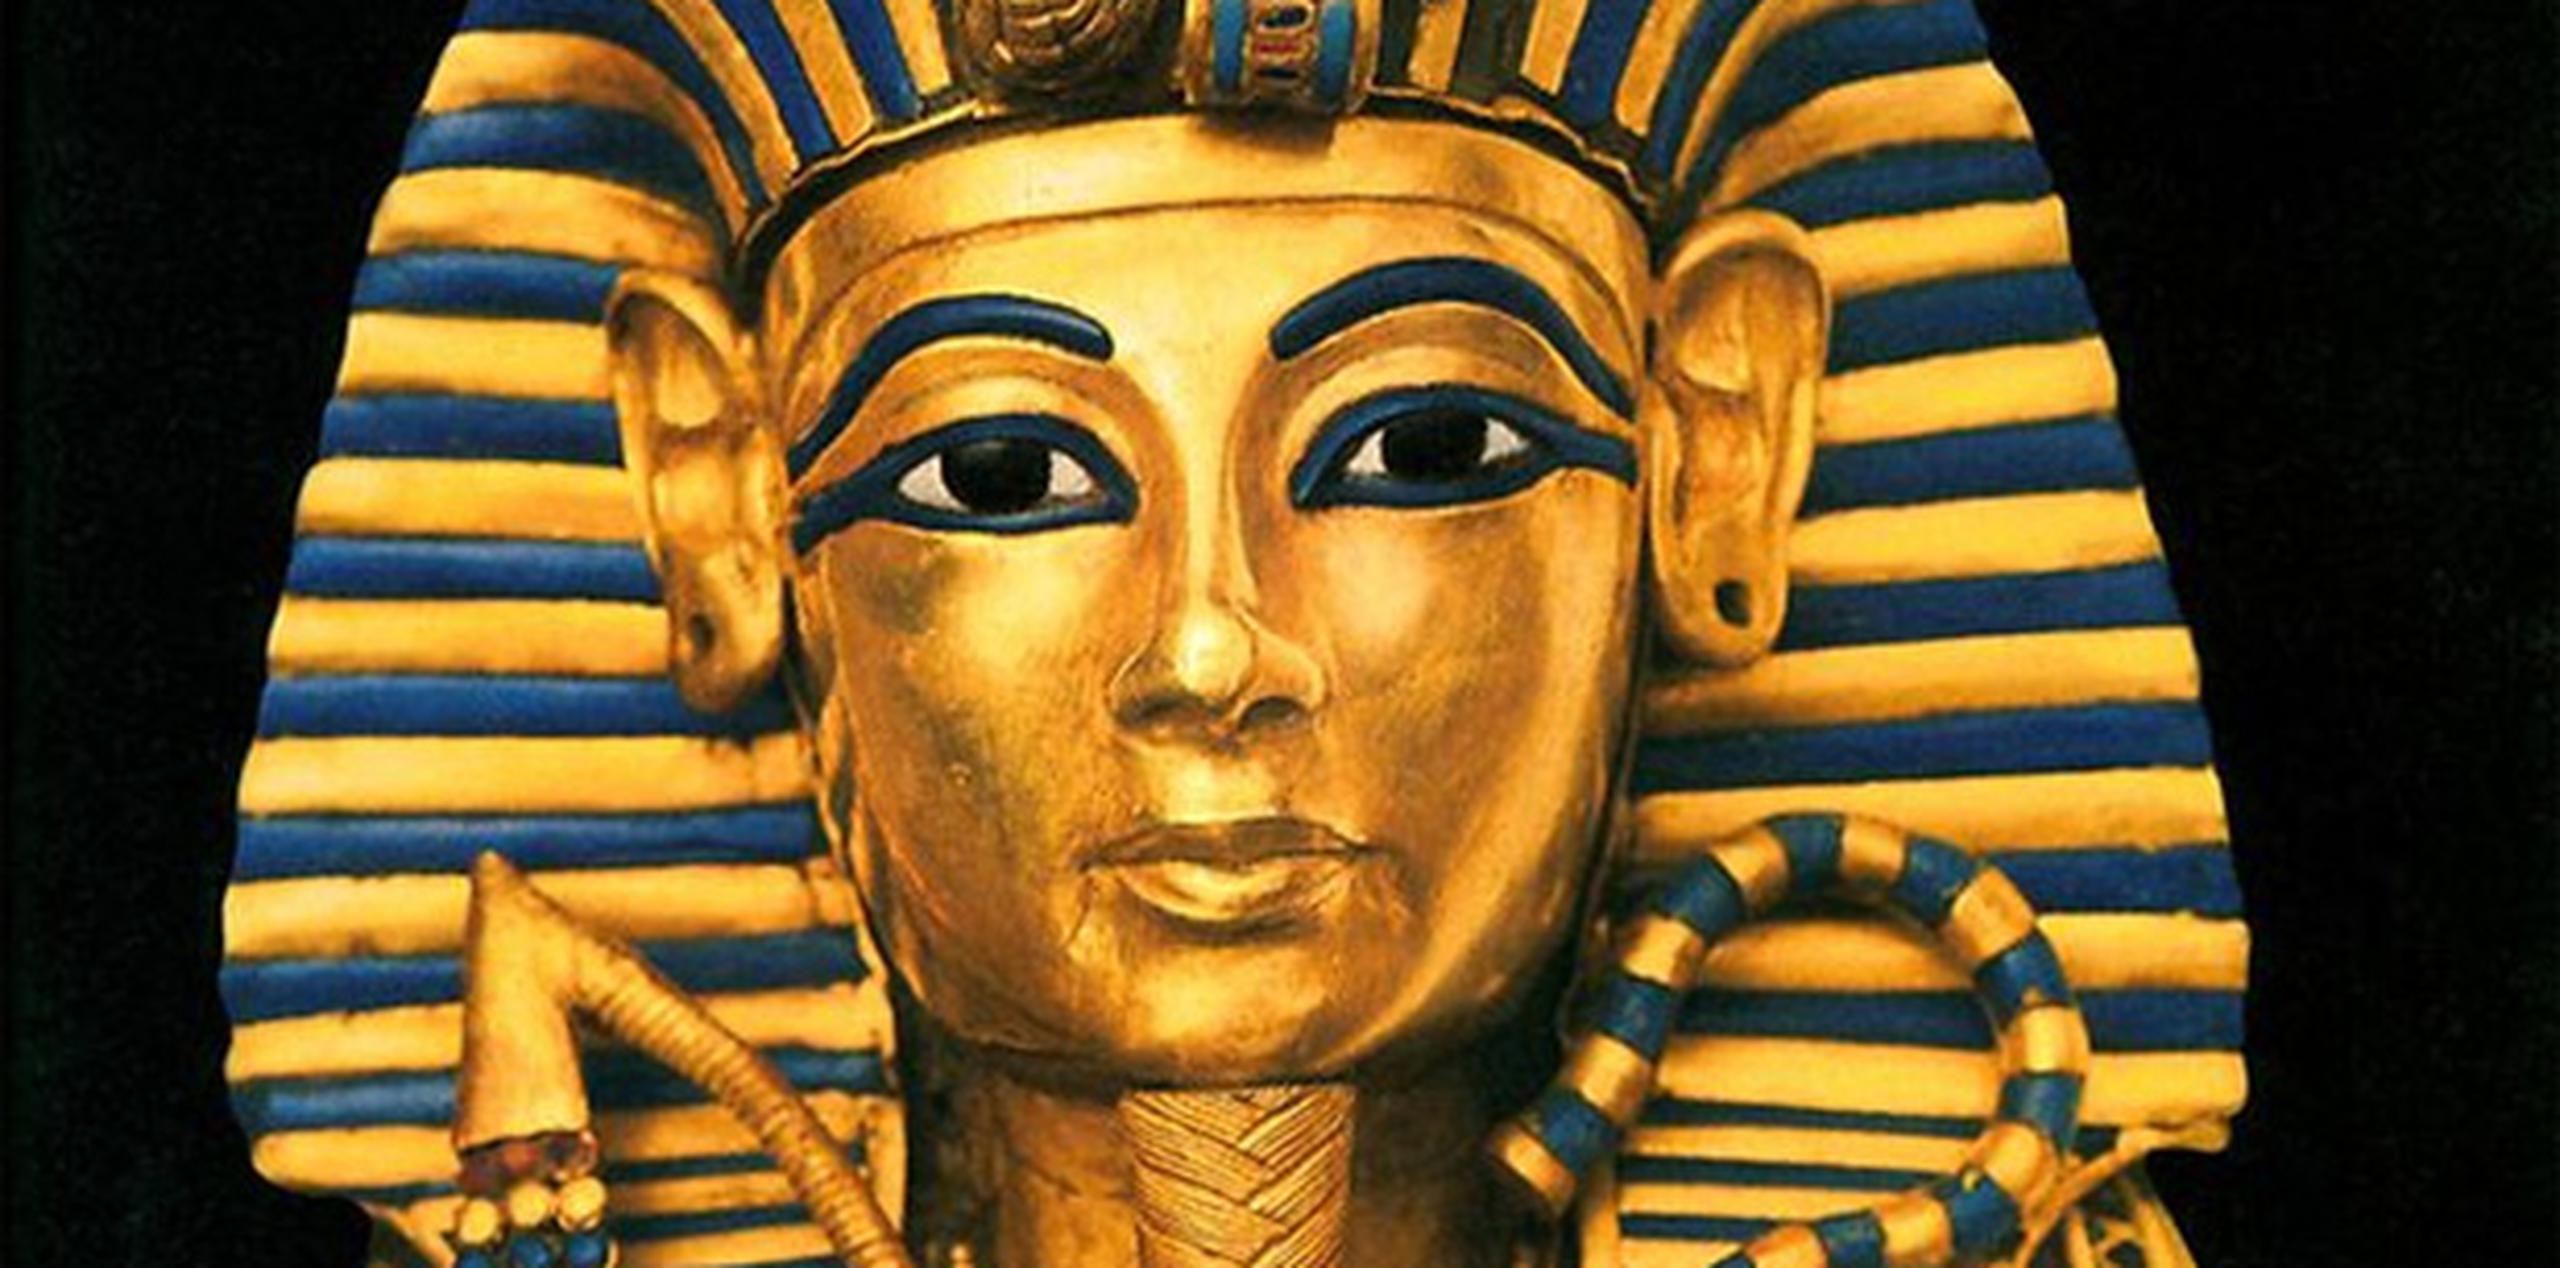 La "autopsia" consistió en el análisis de 2,000 escáneres informáticos y pruebas de ADN, que apuntan a que el rey egipcio nació del incesto entre dos hermanos, de los que heredó una enfermedad de los huesos. (Archivo)